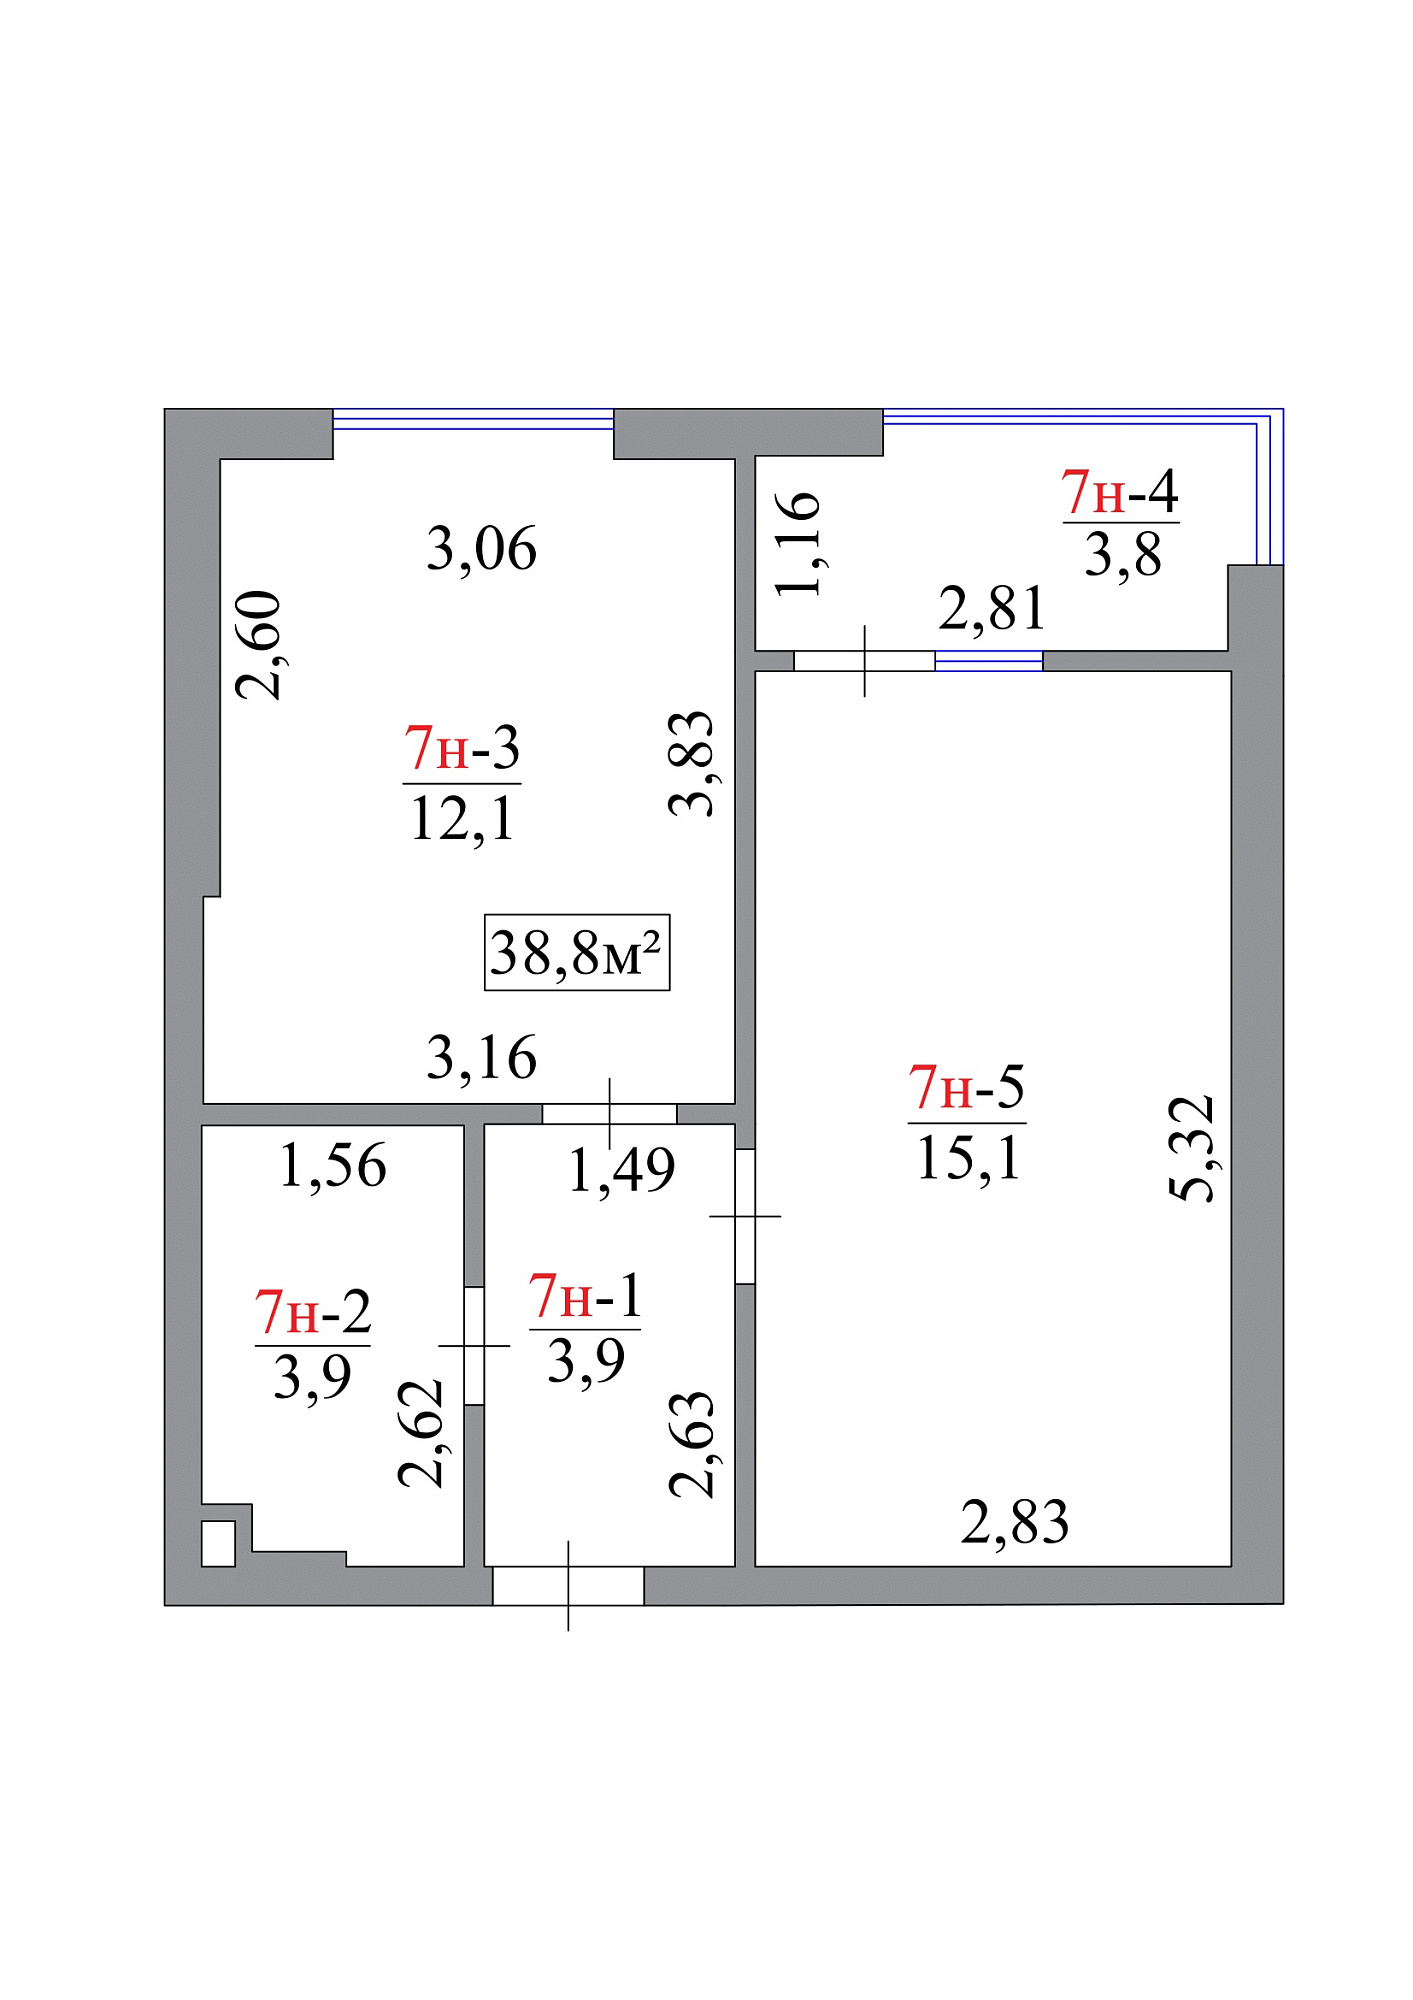 Планировка 1-к квартира площей 38.8м2, AB-07-01/0007а.